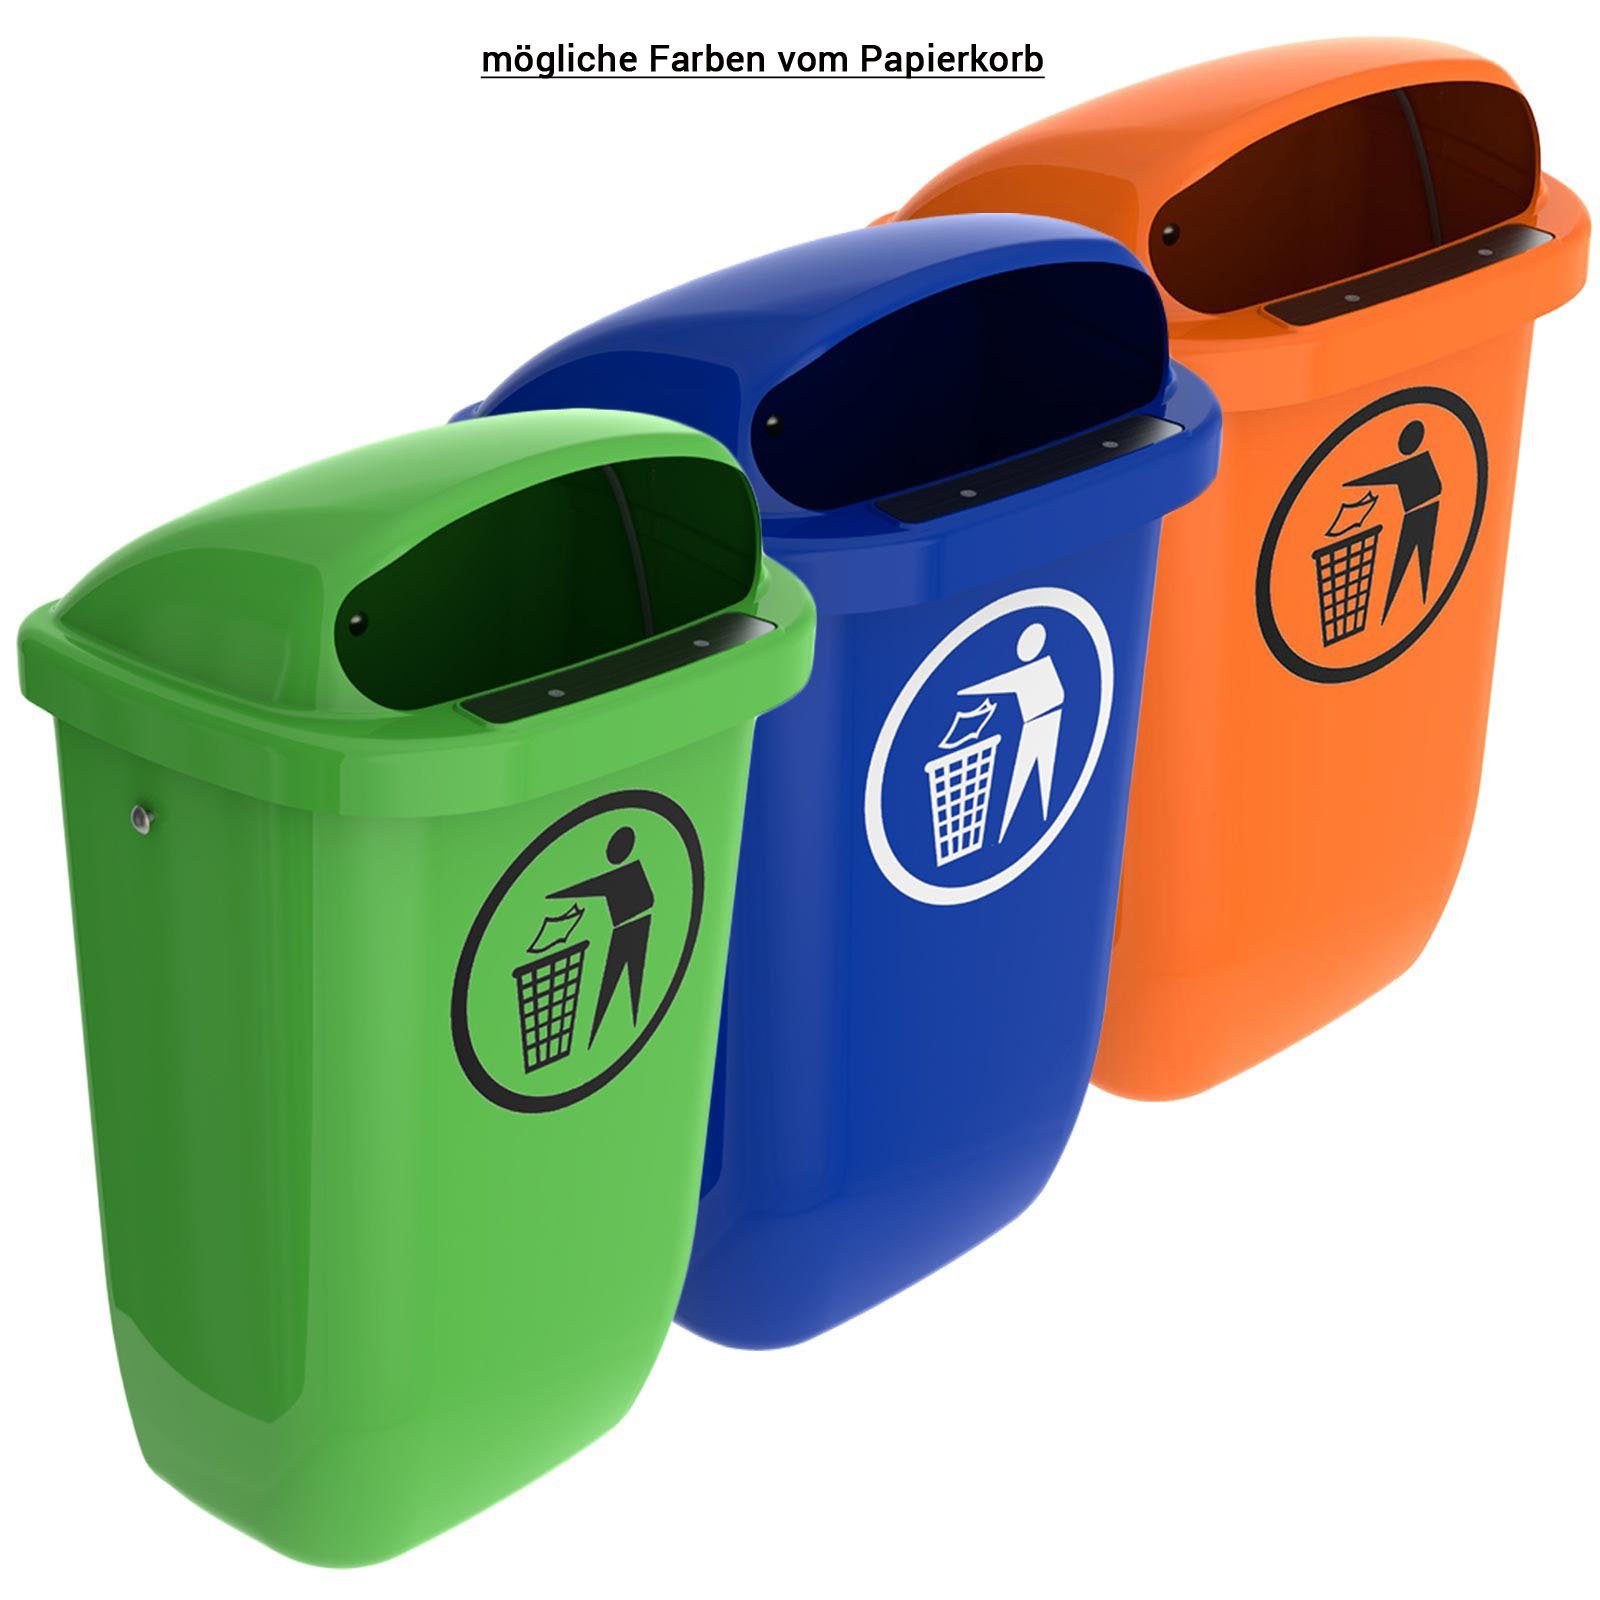 SULO Mülleimer Sulo Original Set Regenhaube grün mit Papierkorb Abfallbehälter